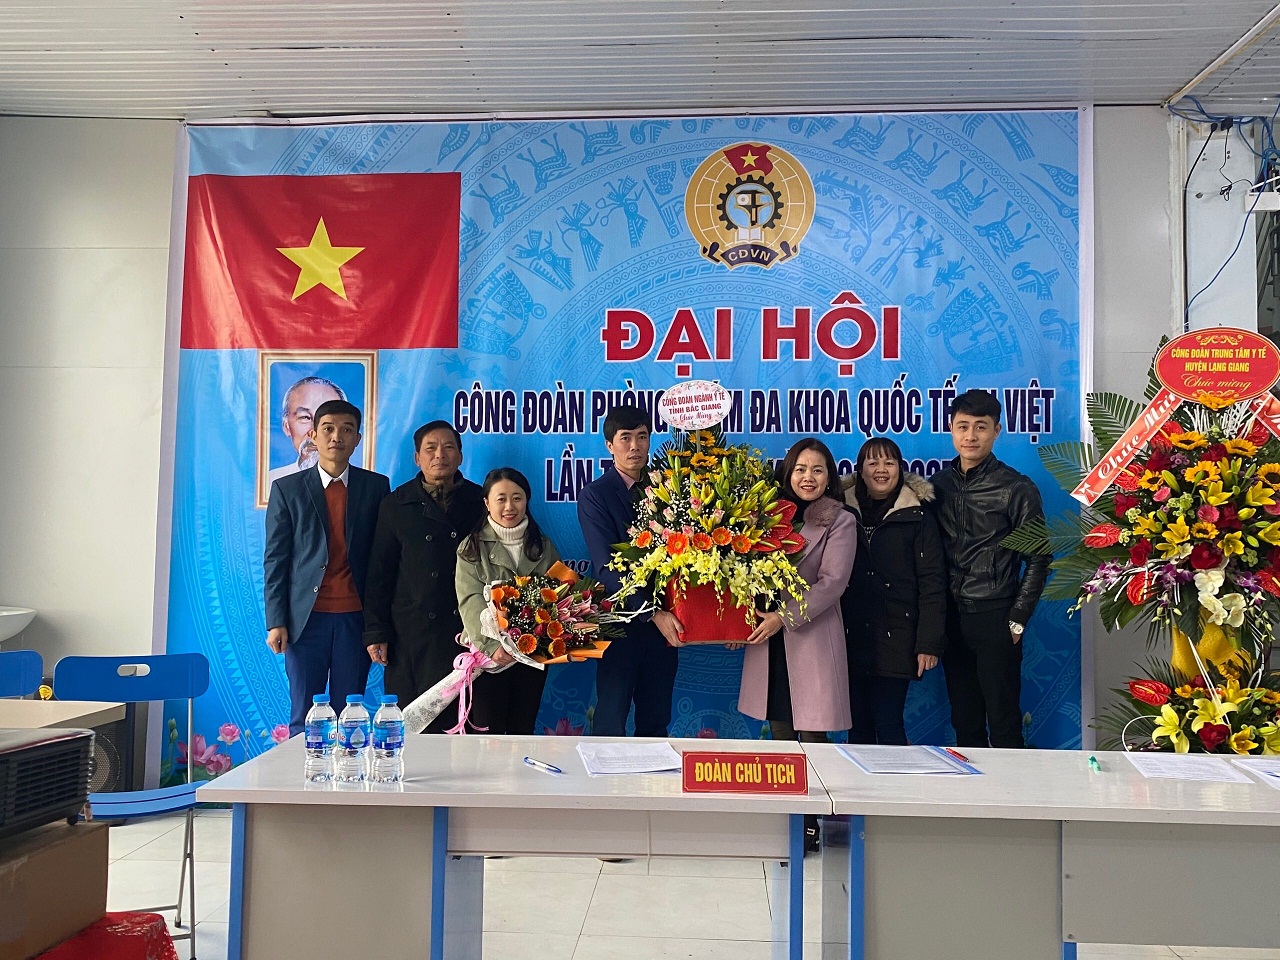 Đại hội Công đoàn Phòng khám đa khoa quốc tế An Việt lần thứ nhất, nhiệm kỳ 2021-2025